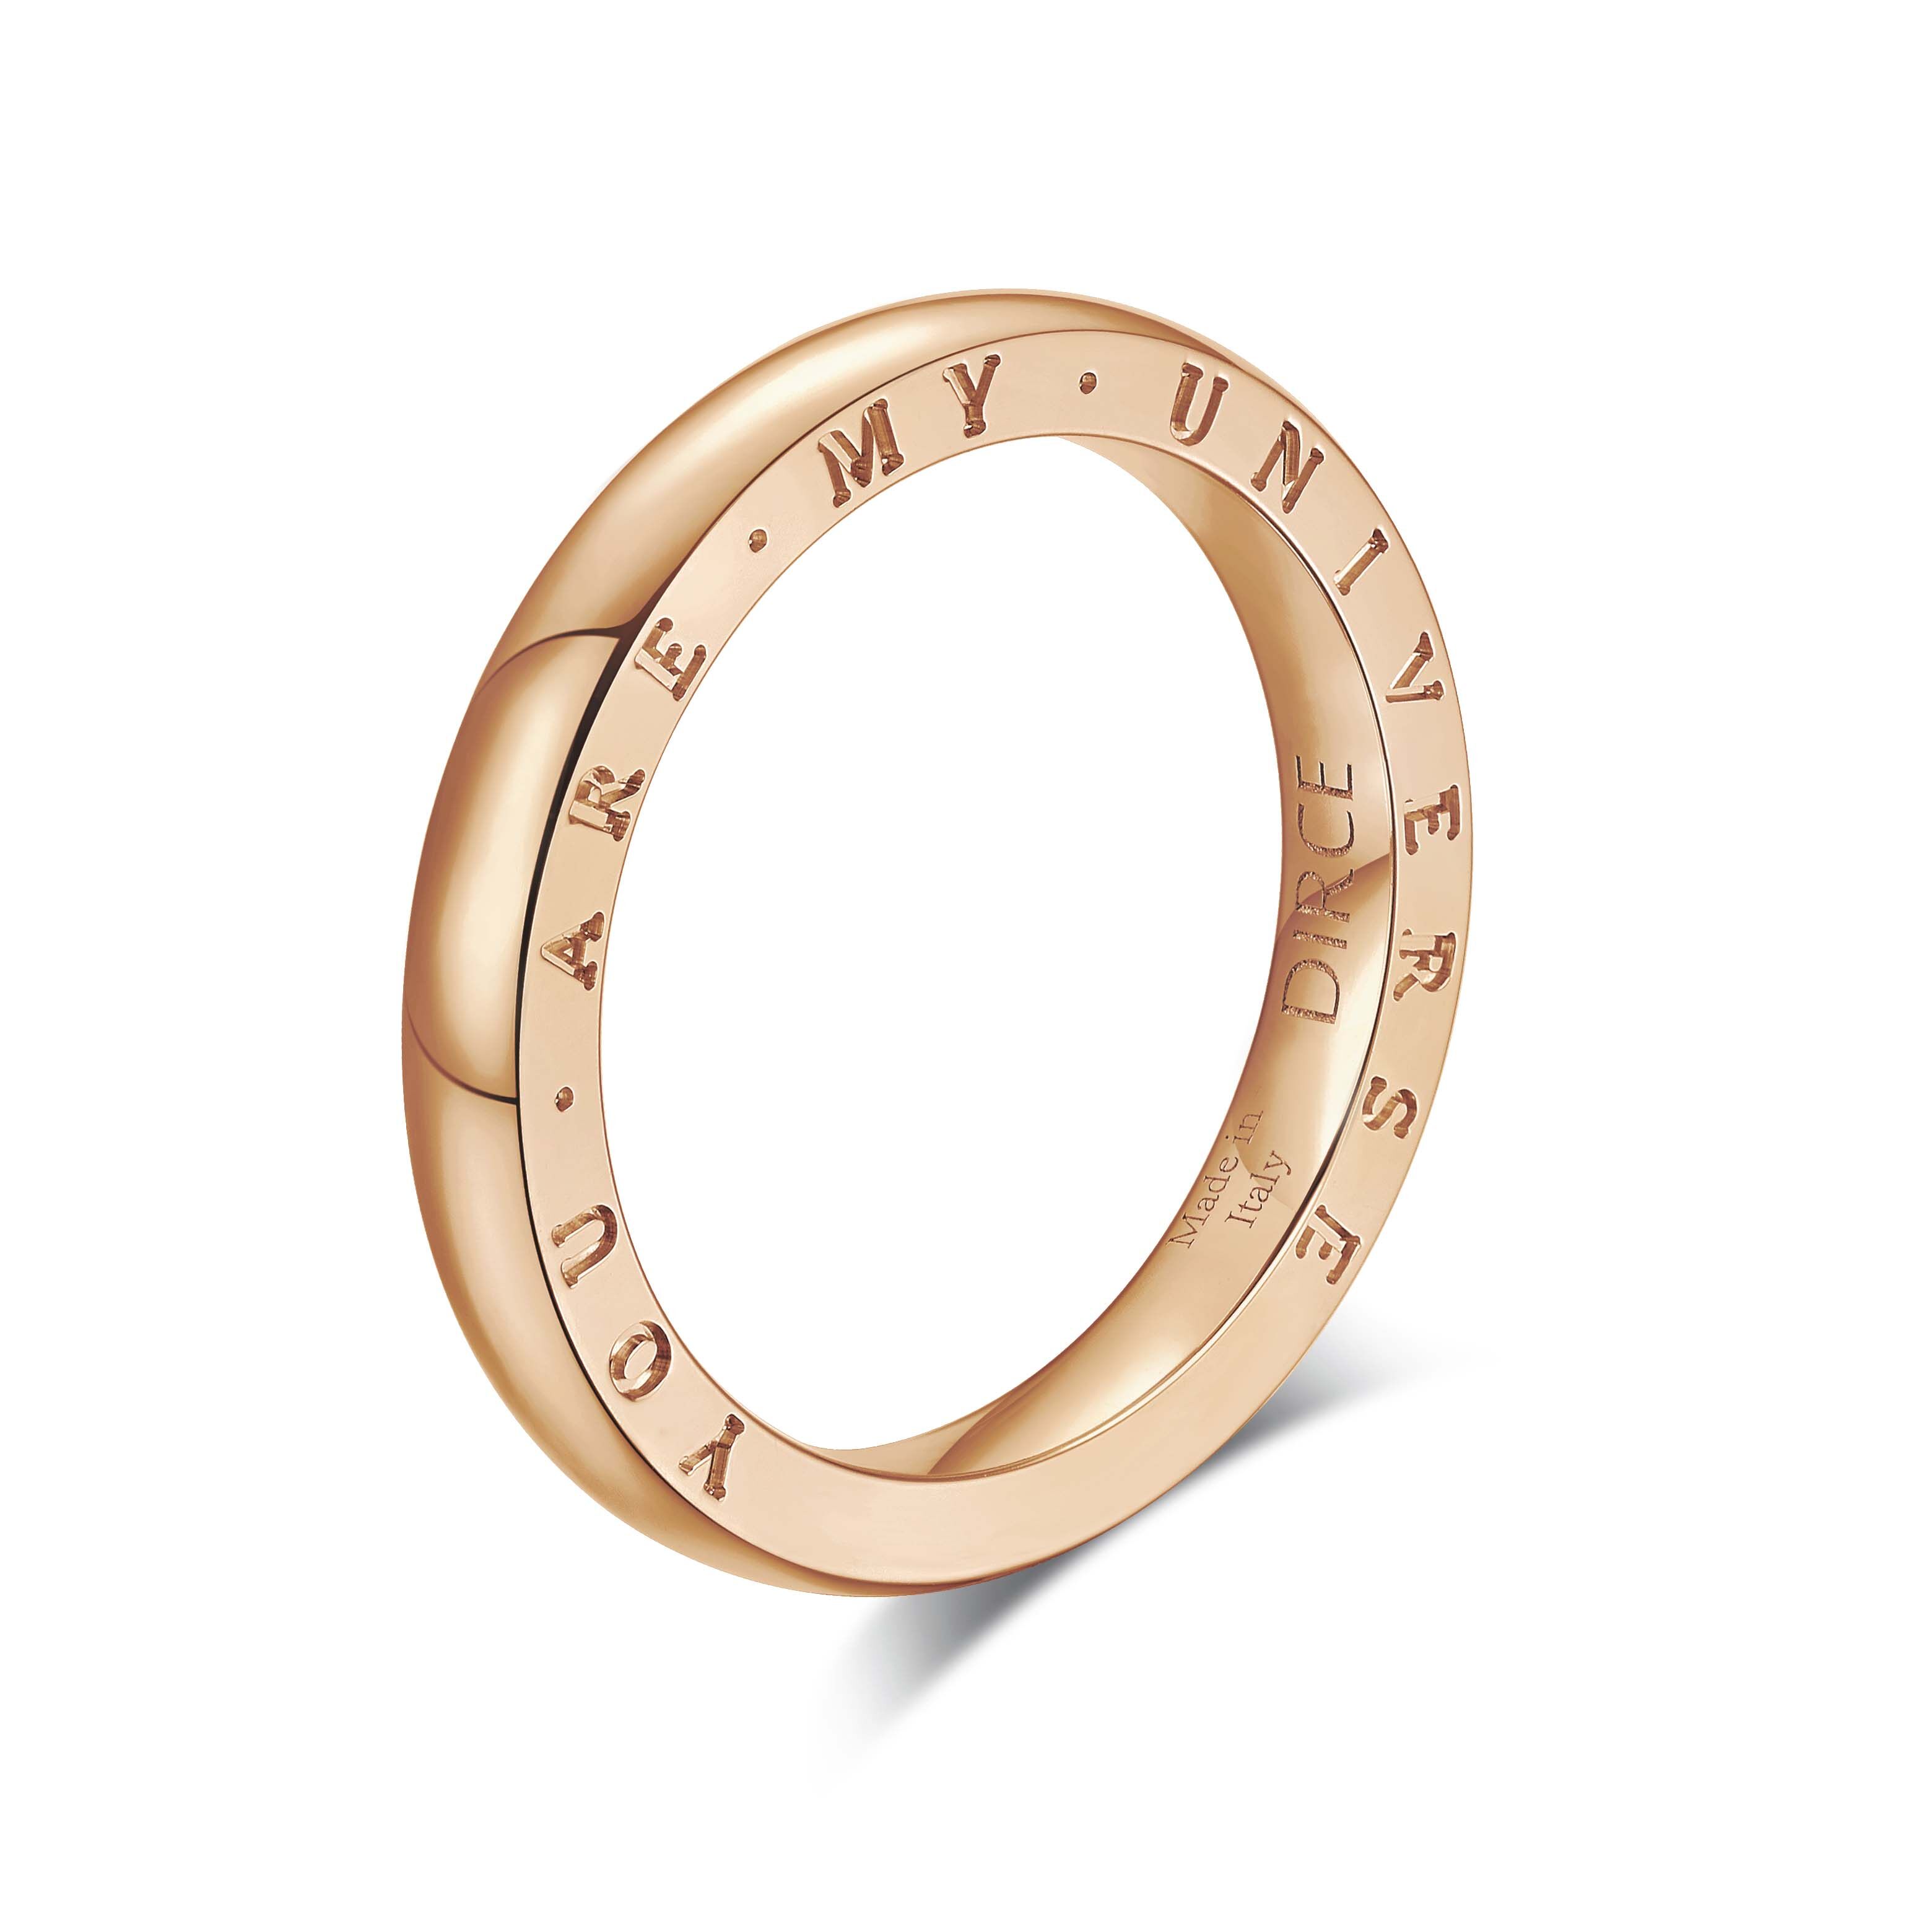 Vera 系列戒指由18K 金製造，配以意大利細膩高拋光工藝及弧圓設計，簡約